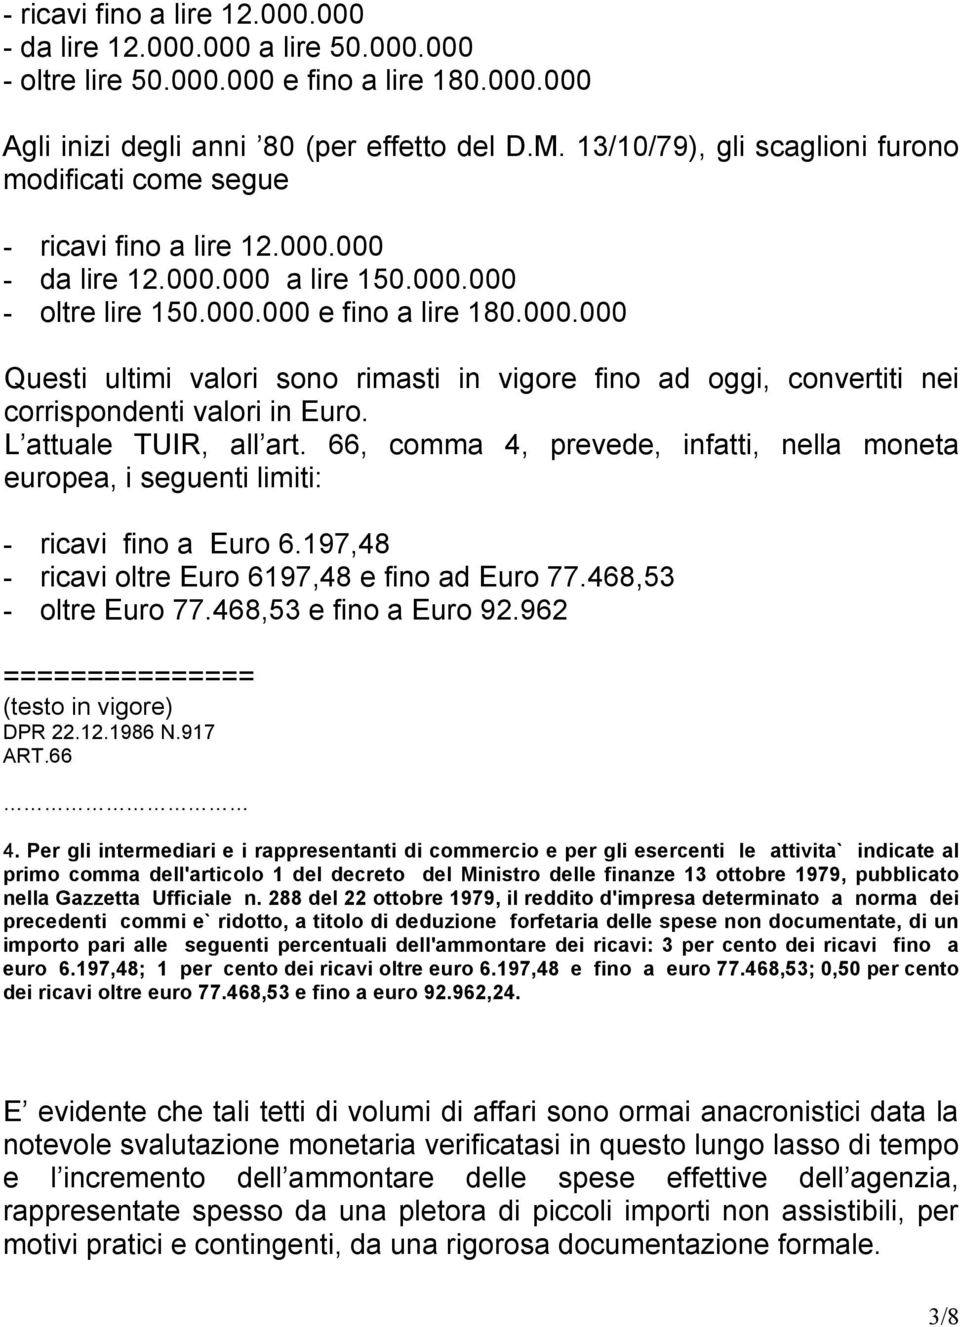 L attuale TUIR, all art. 66, comma 4, prevede, infatti, nella moneta europea, i seguenti limiti: - ricavi fino a Euro 6.197,48 - ricavi oltre Euro 6197,48 e fino ad Euro 77.468,53 - oltre Euro 77.